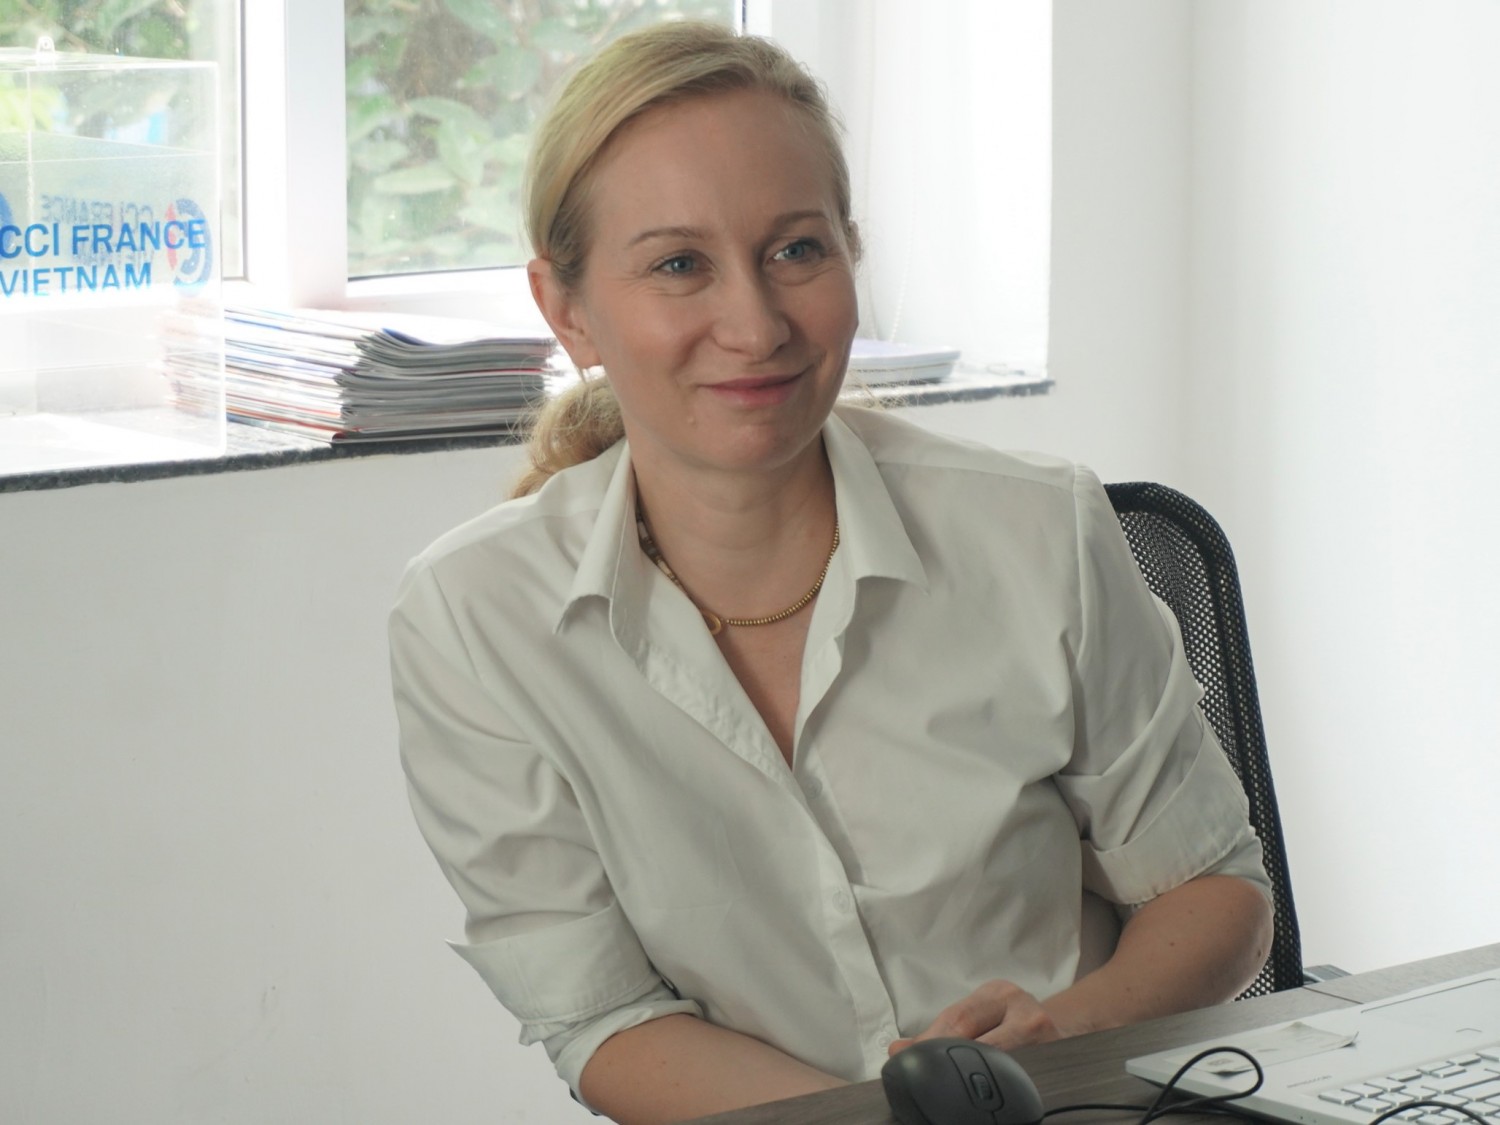 Bà Sophie Mermaz, Giám đốc điều hành CCIFV tại Hà Nội